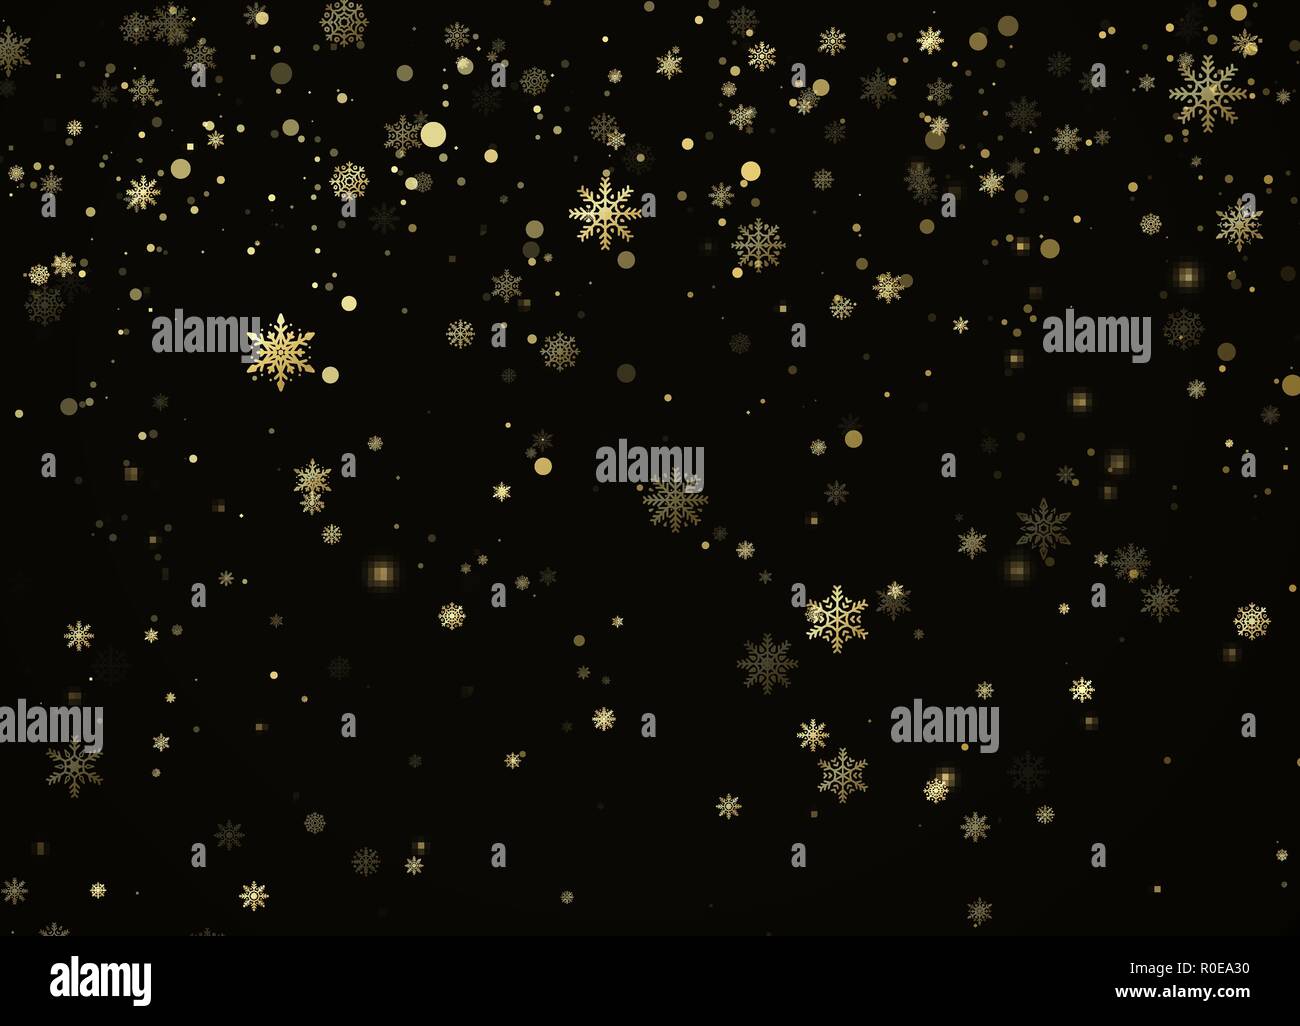 Golden Schneefall. Urlaub Dekoration Hintergrund. Neues Jahr und Weihnachten Muster mit goldenen Schneeflocken auf schwarzem Hintergrund. Vector Illustration Stock Vektor